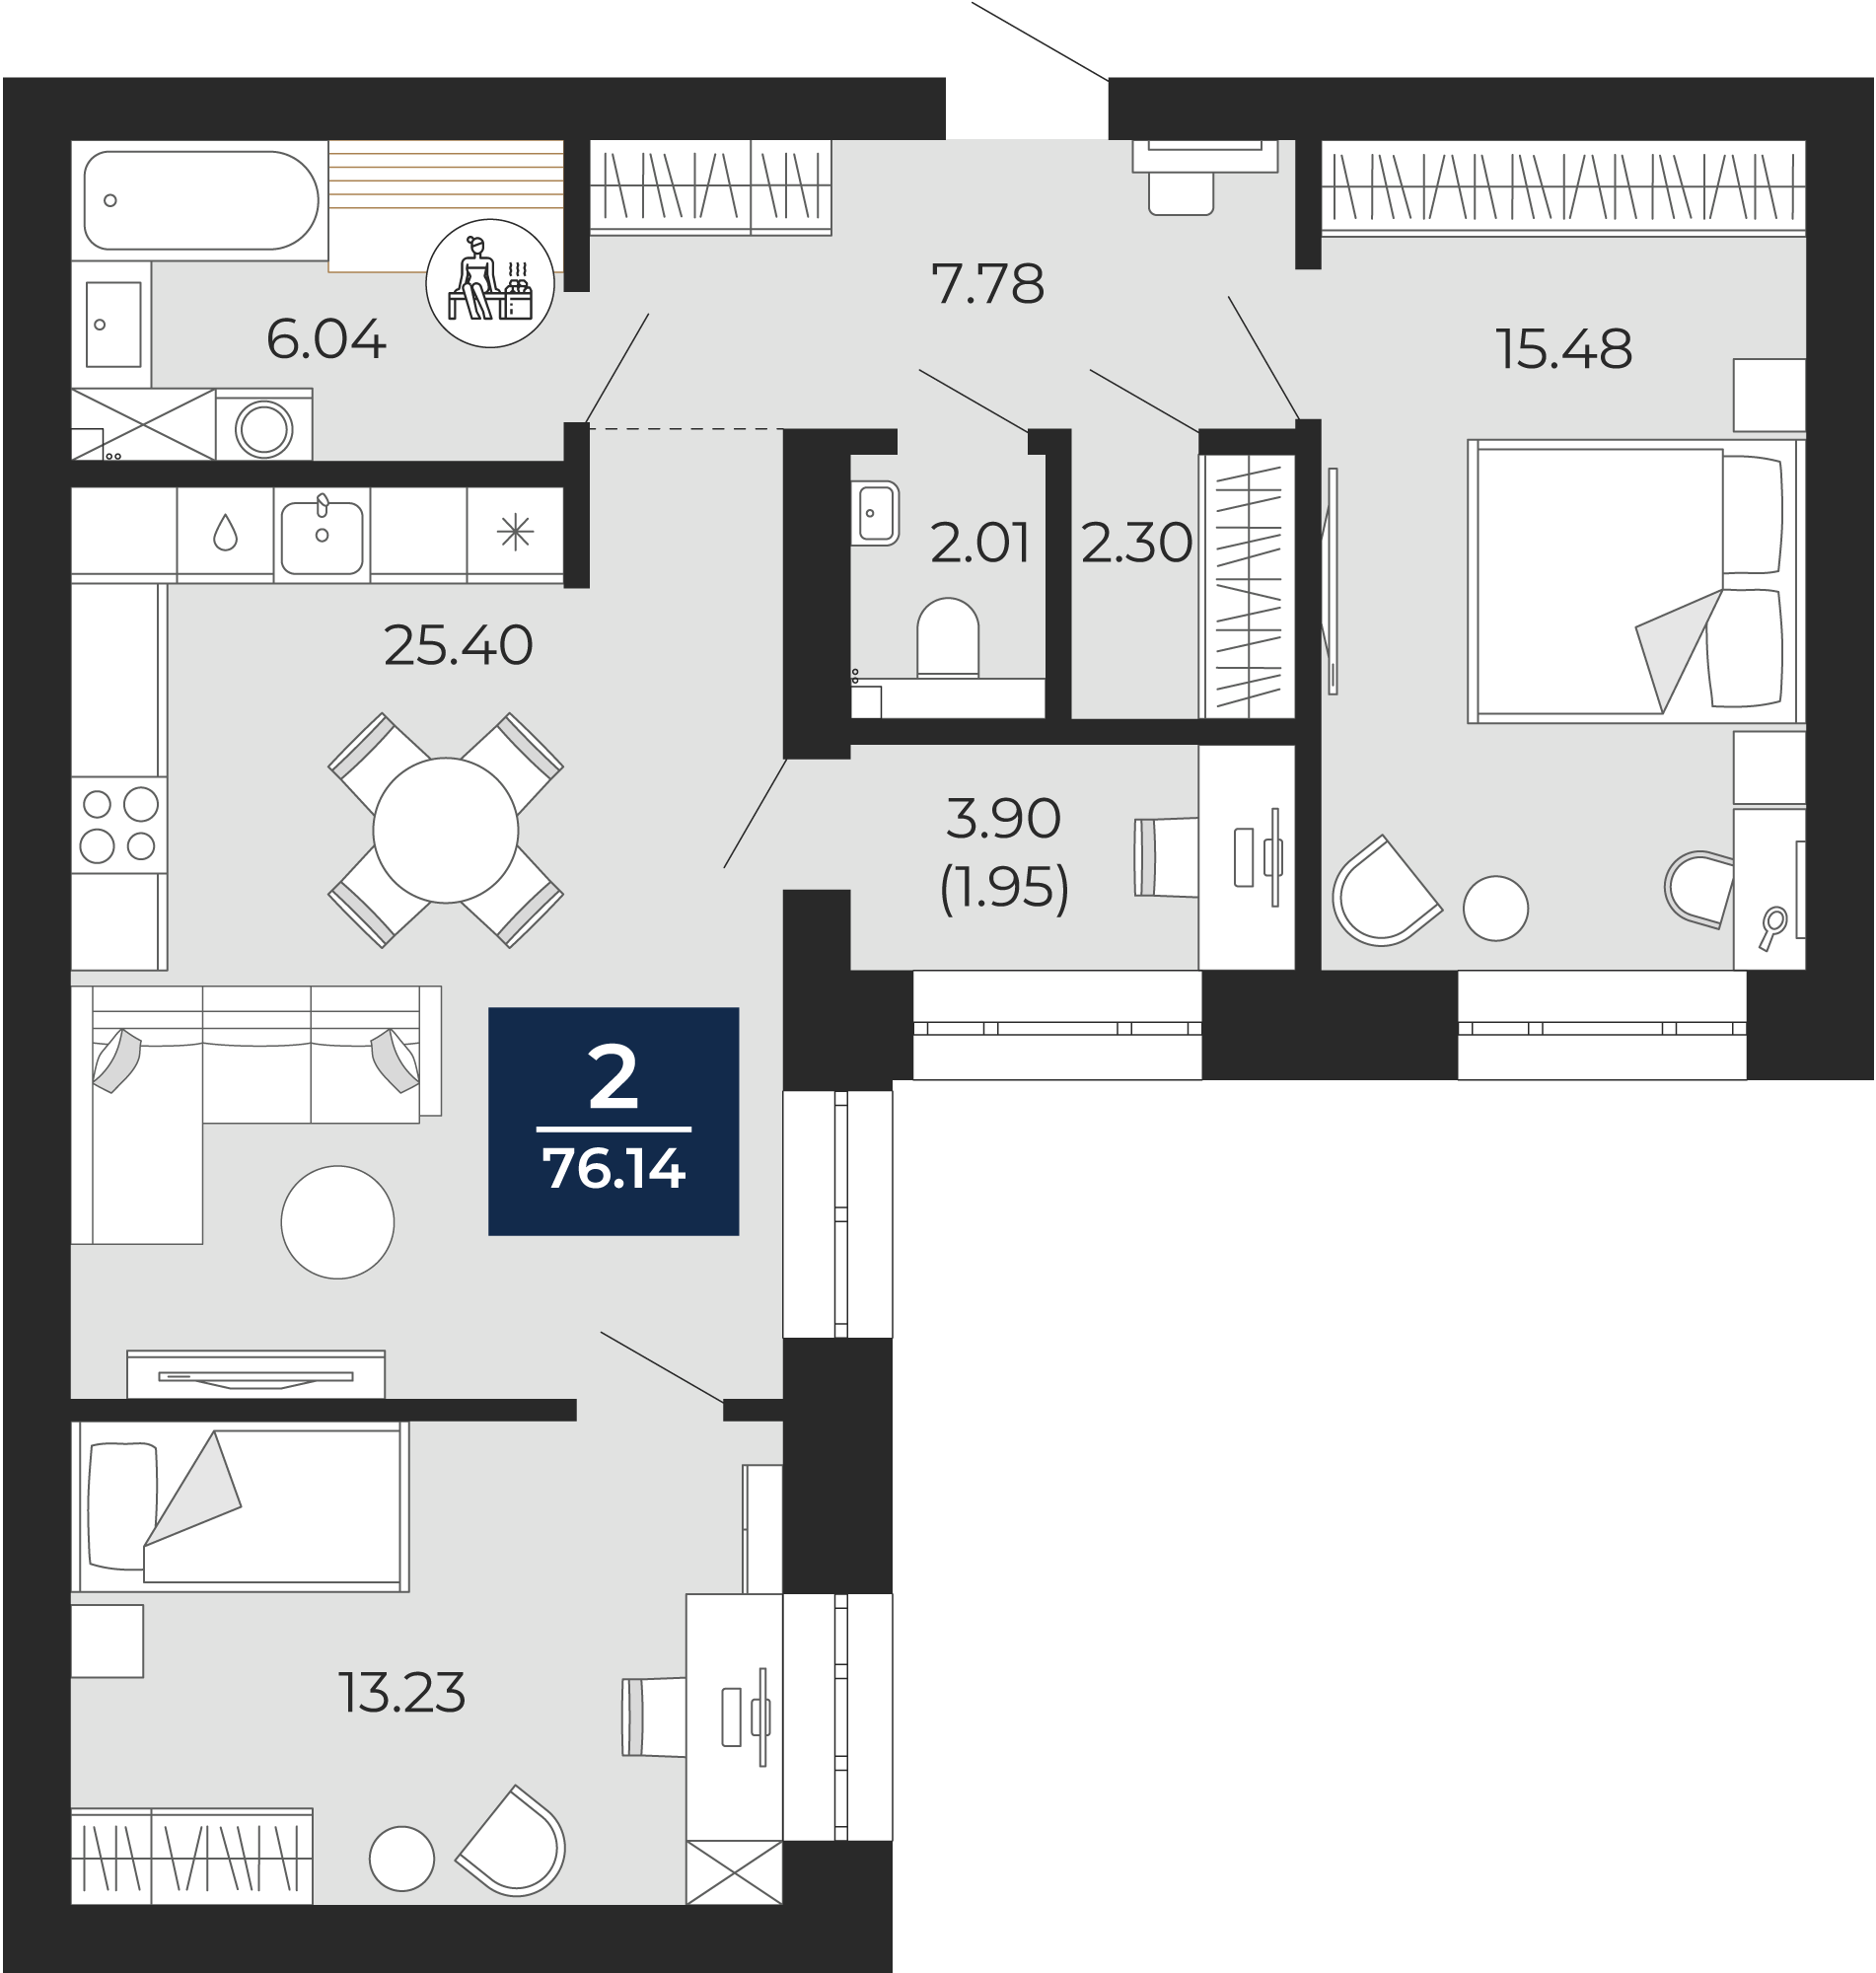 Квартира № 51, 2-комнатная, 76.14 кв. м, 2 этаж